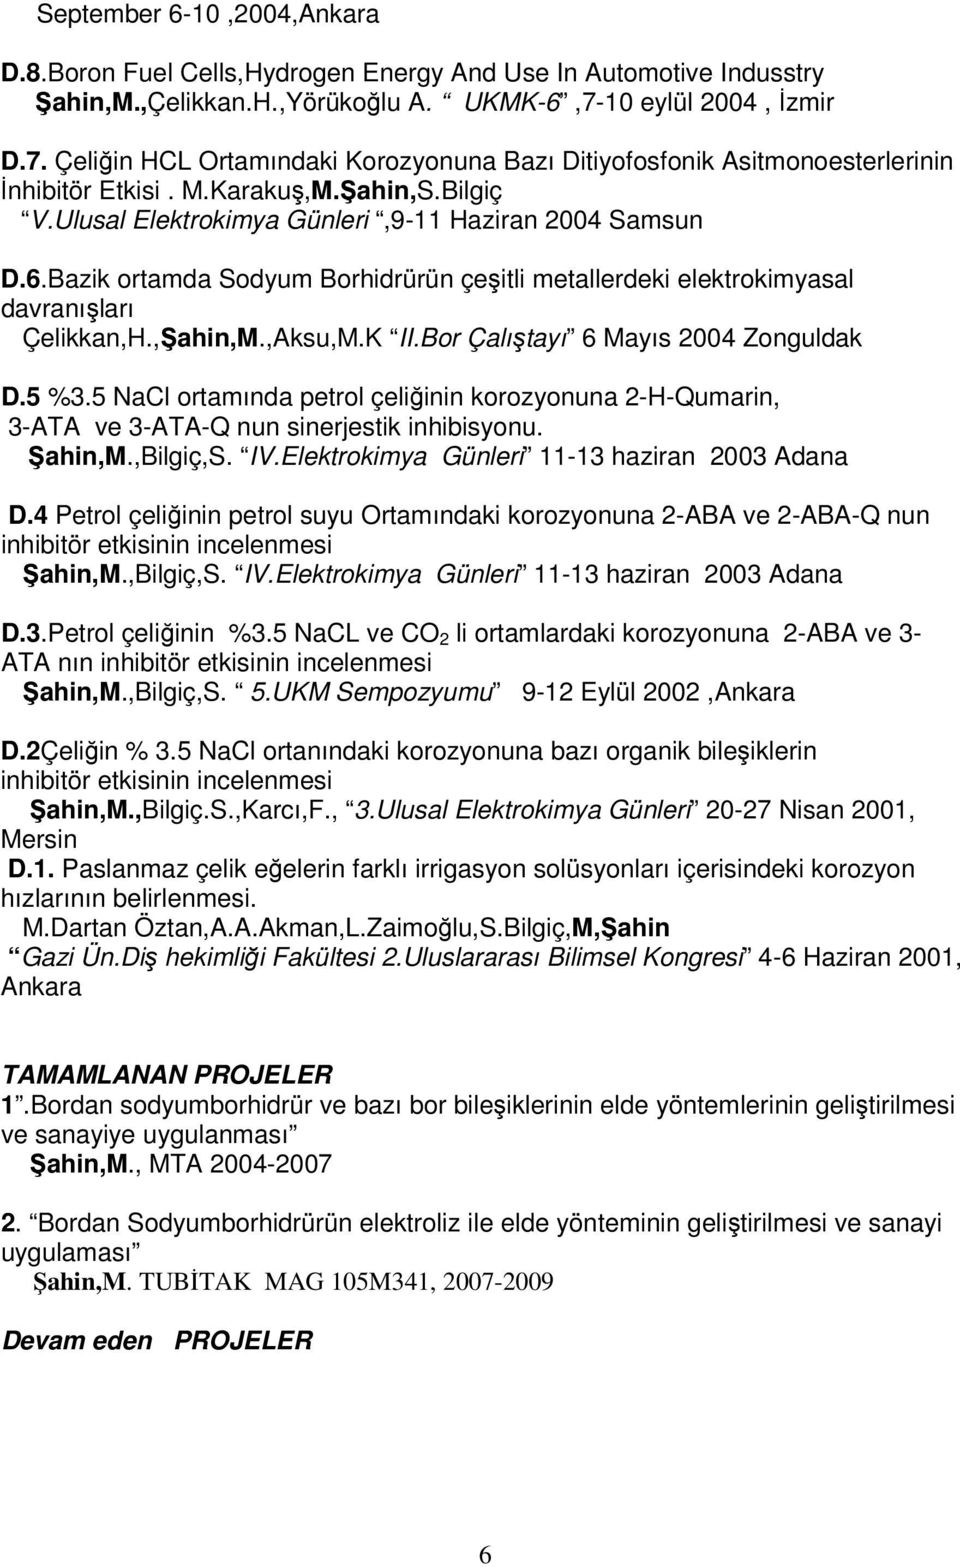 Ulusal Elektrokimya Günleri,9-11 Haziran 2004 Samsun D.6.Bazik ortamda Sodyum Borhidrürün çeşitli metallerdeki elektrokimyasal davranışları Çelikkan,H.,Şahin,M.,Aksu,M.K II.